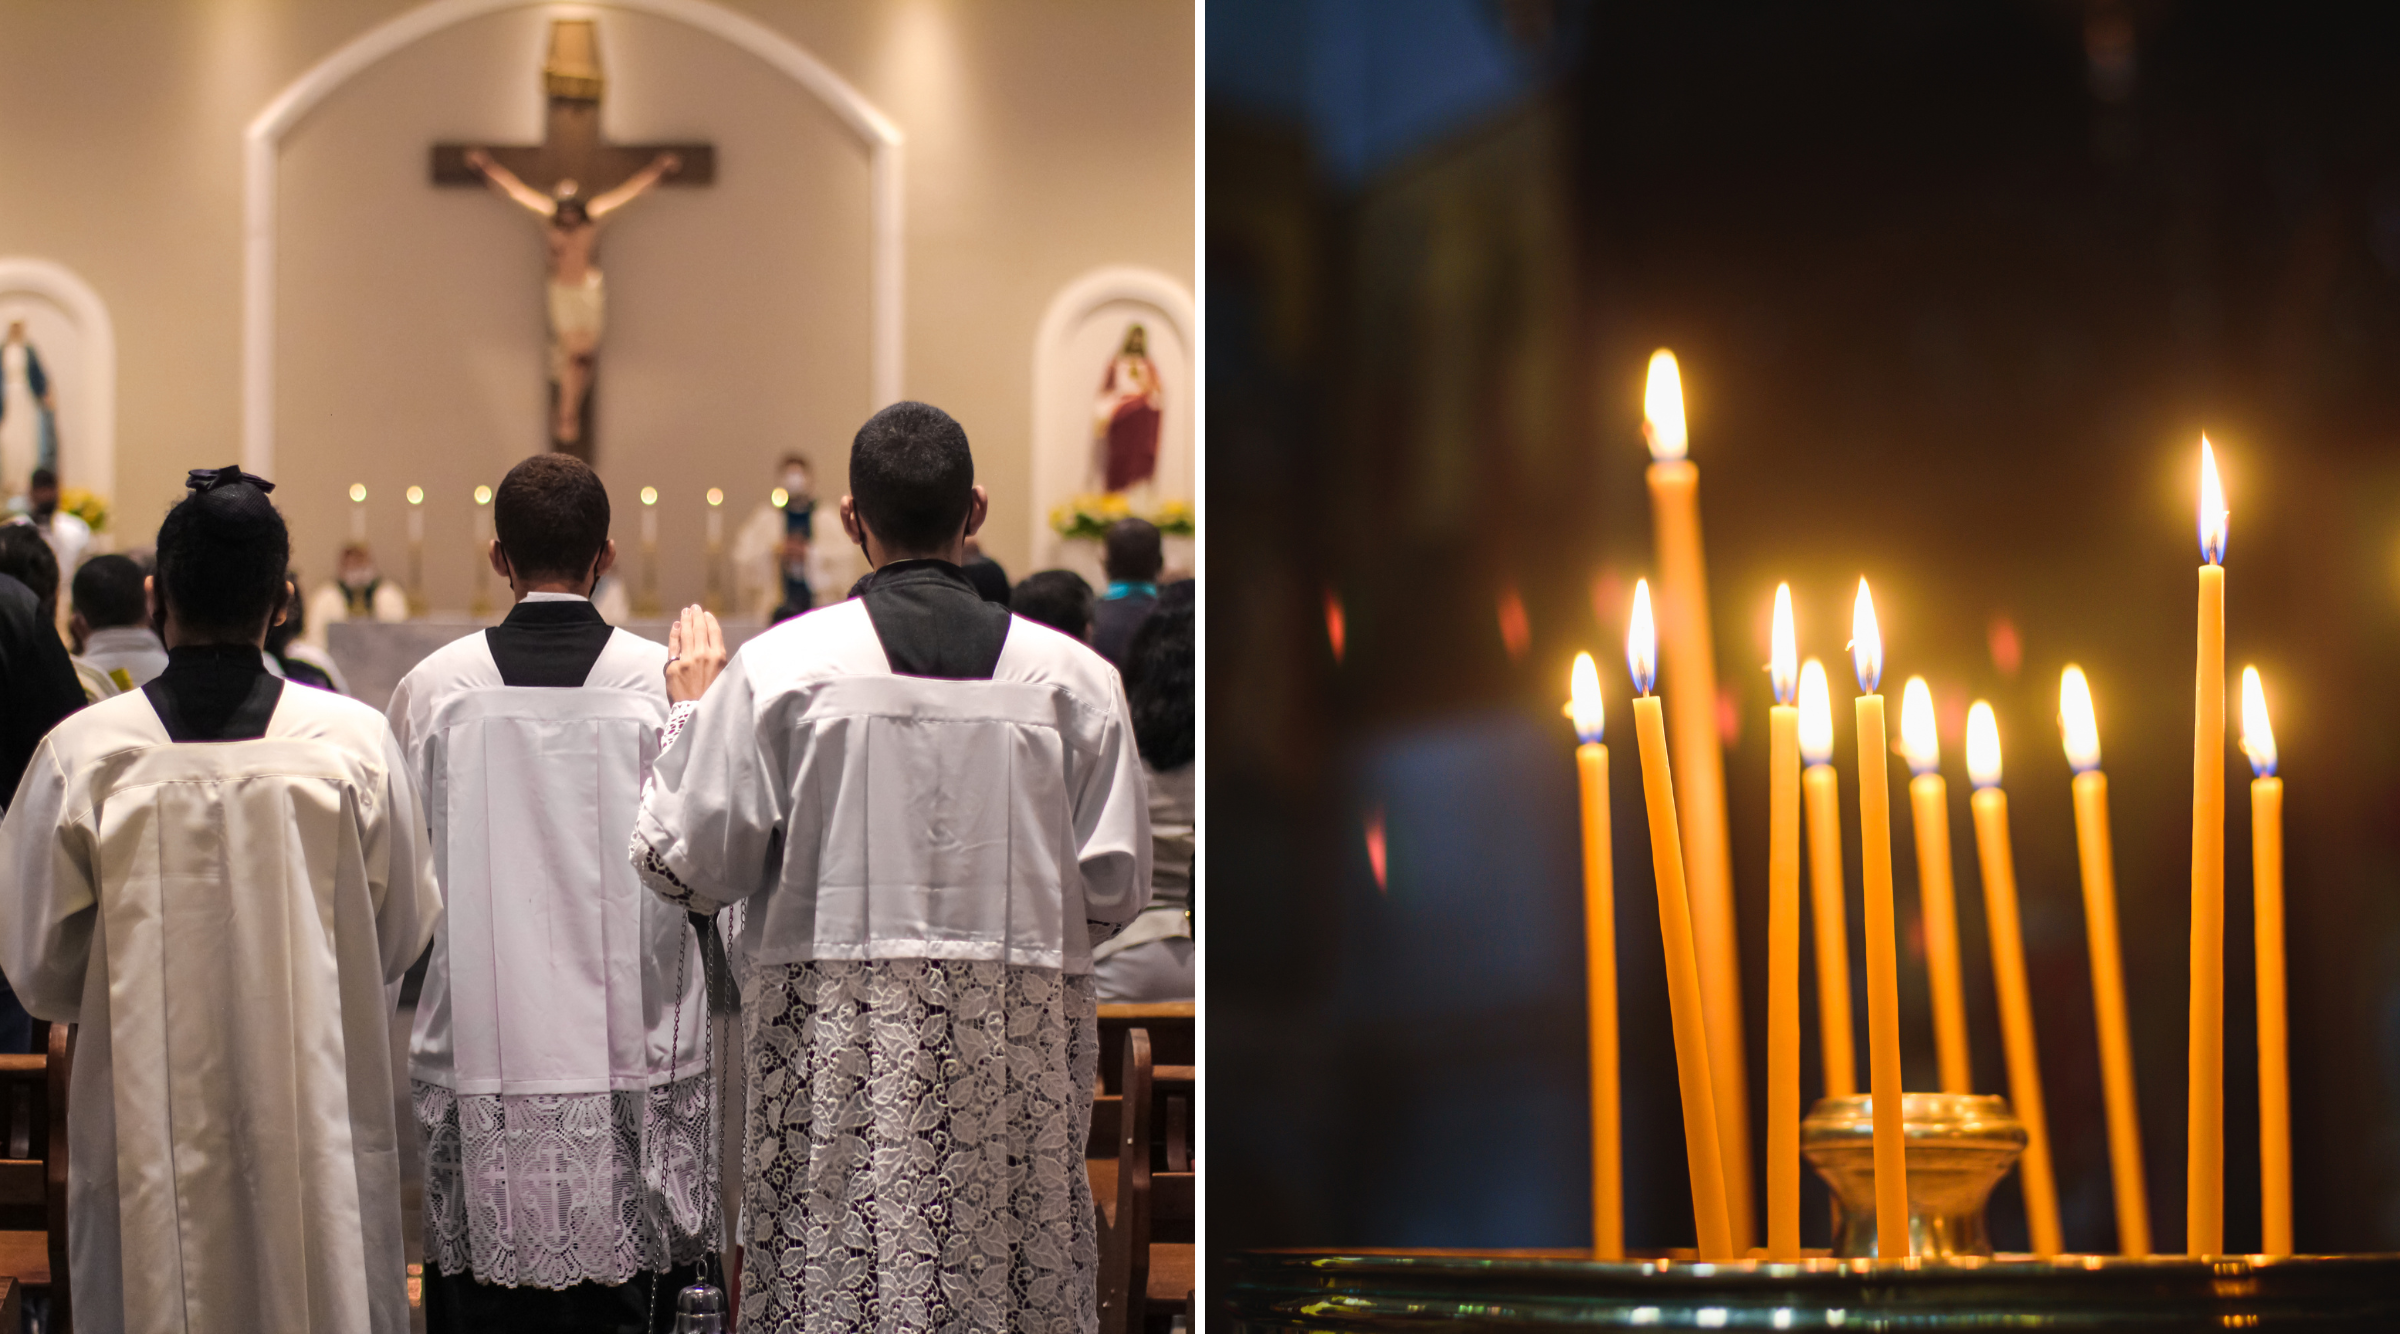 Präster i katolsk kyrka och tunna böneljus i två foton sida vid sida.